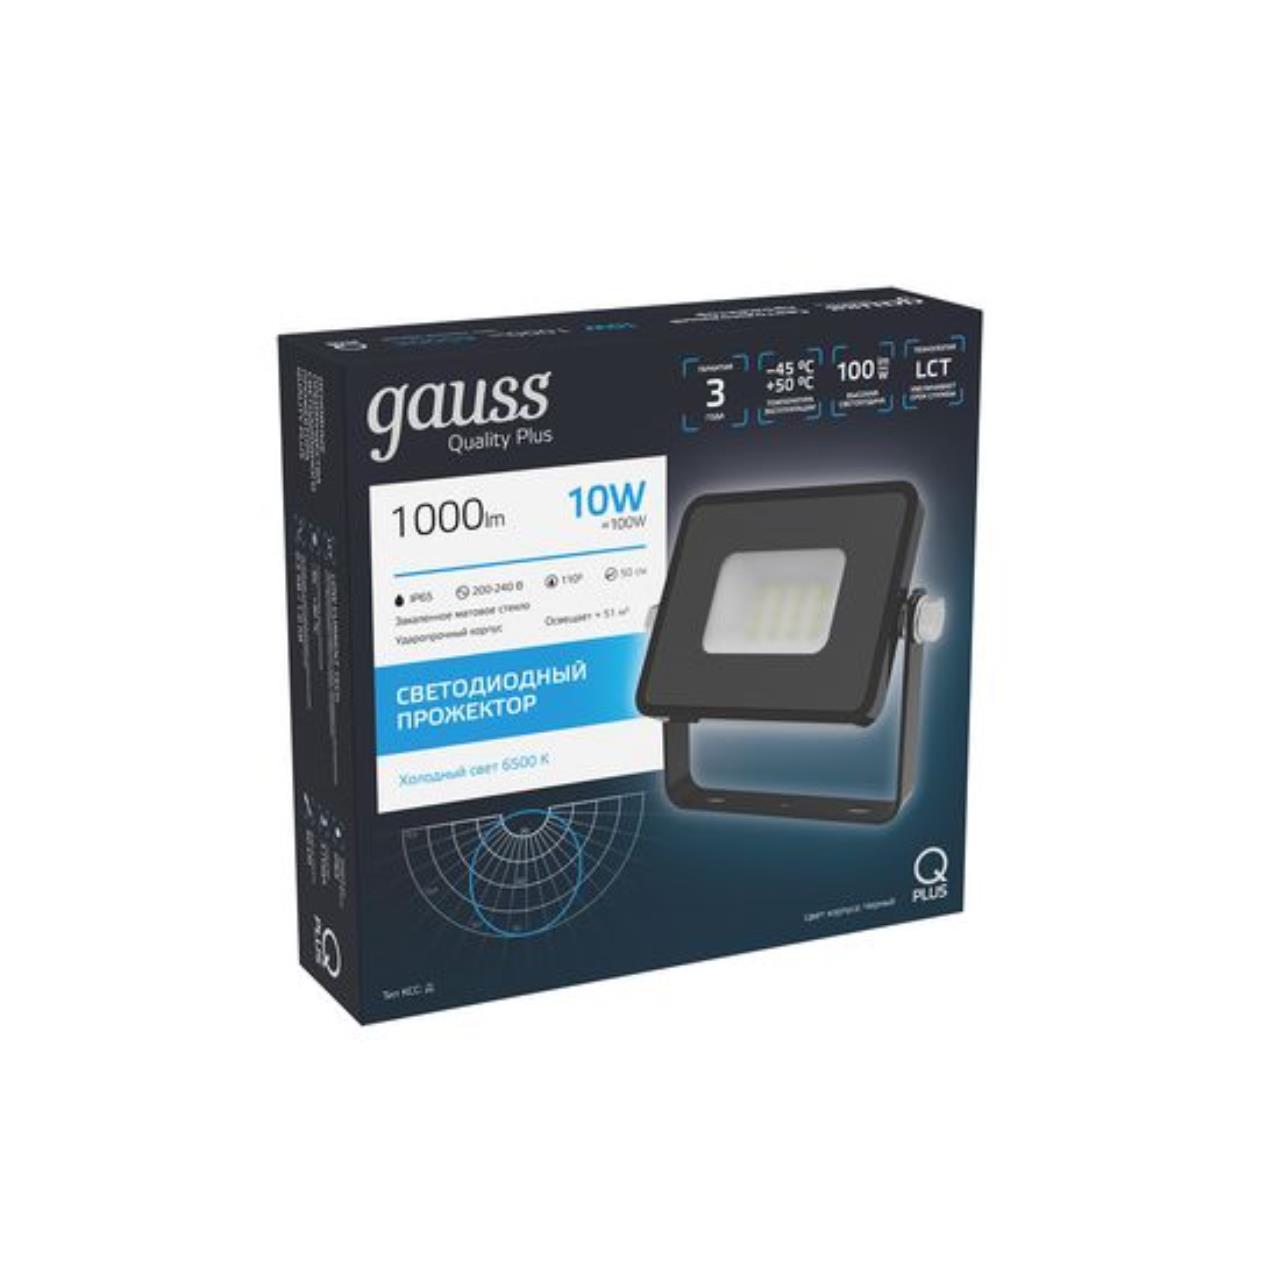 613511310 Прожектор Gauss LED Qplus 10W 900lm IP65 6500К черный 1/60